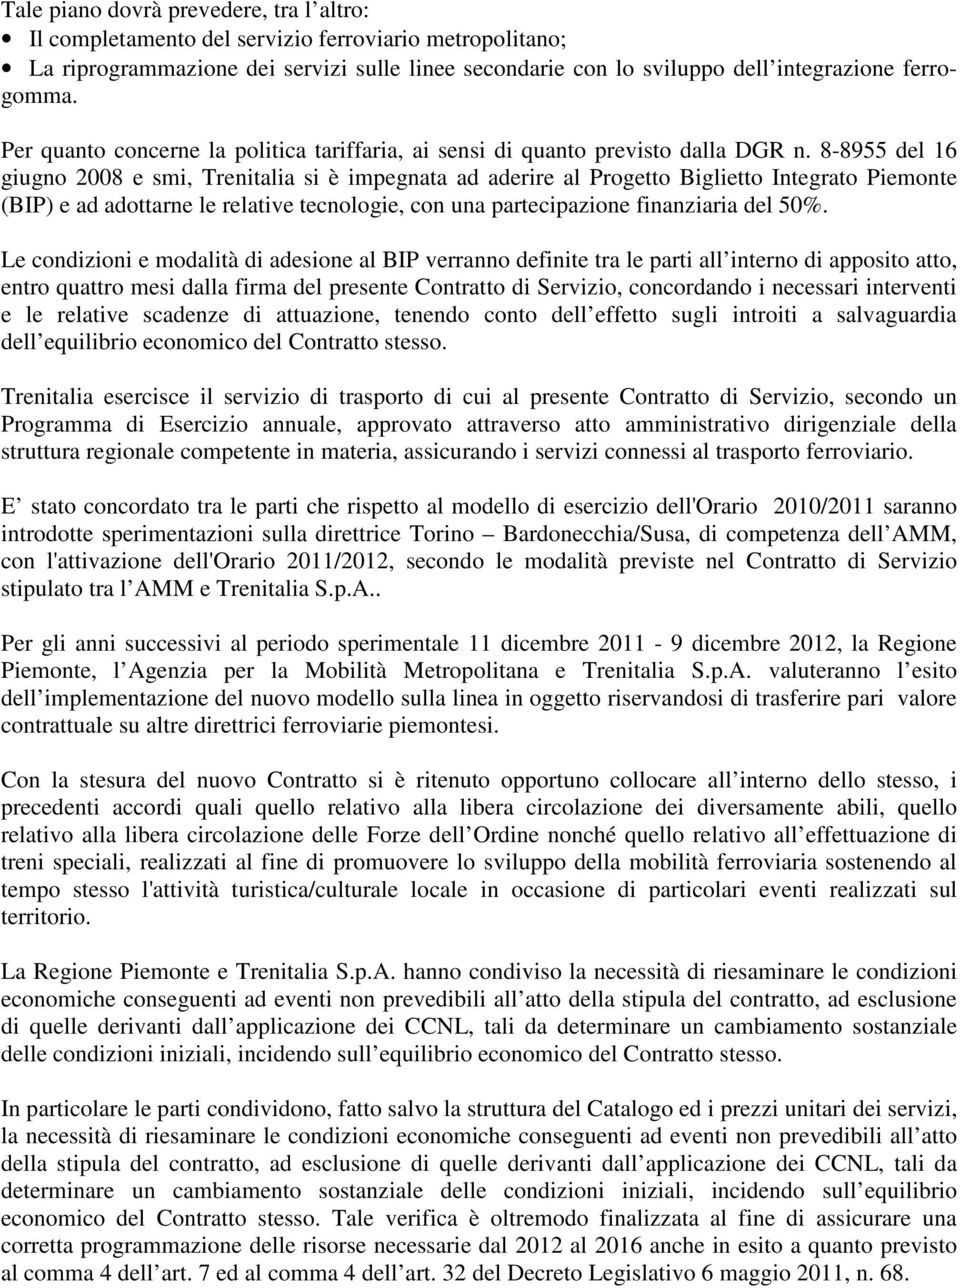 8-8955 del 16 giugno 2008 e smi, Trenitalia si è impegnata ad aderire al Progetto Biglietto Integrato Piemonte (BIP) e ad adottarne le relative tecnologie, con una partecipazione finanziaria del 50%.